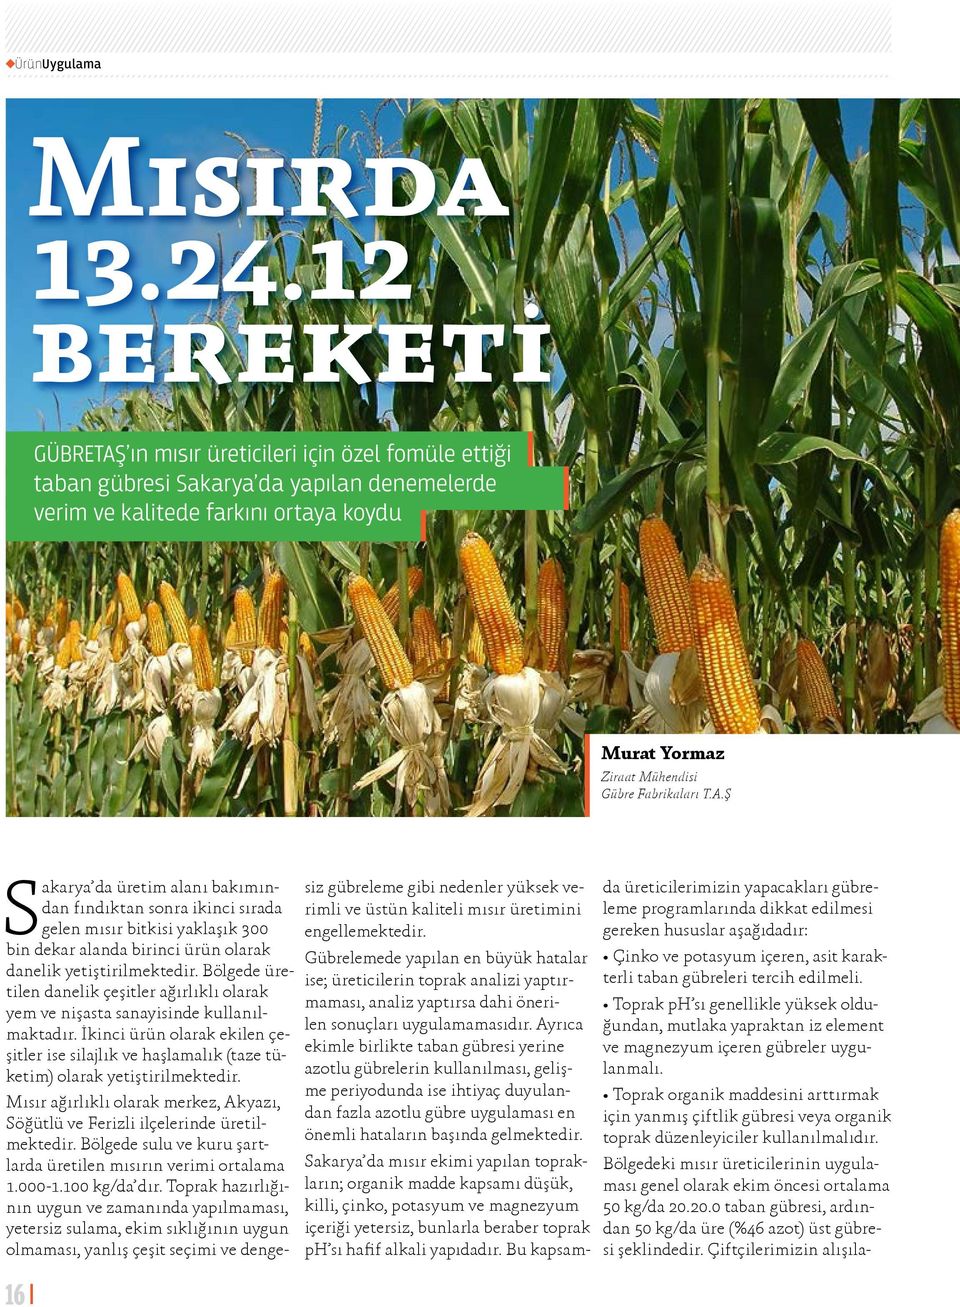 A.Ş Sakarya da üretim alanı bakımından fındıktan sonra ikinci sırada gelen mısır bitkisi yaklaşık 300 bin dekar alanda birinci ürün olarak danelik yetiştirilmektedir.